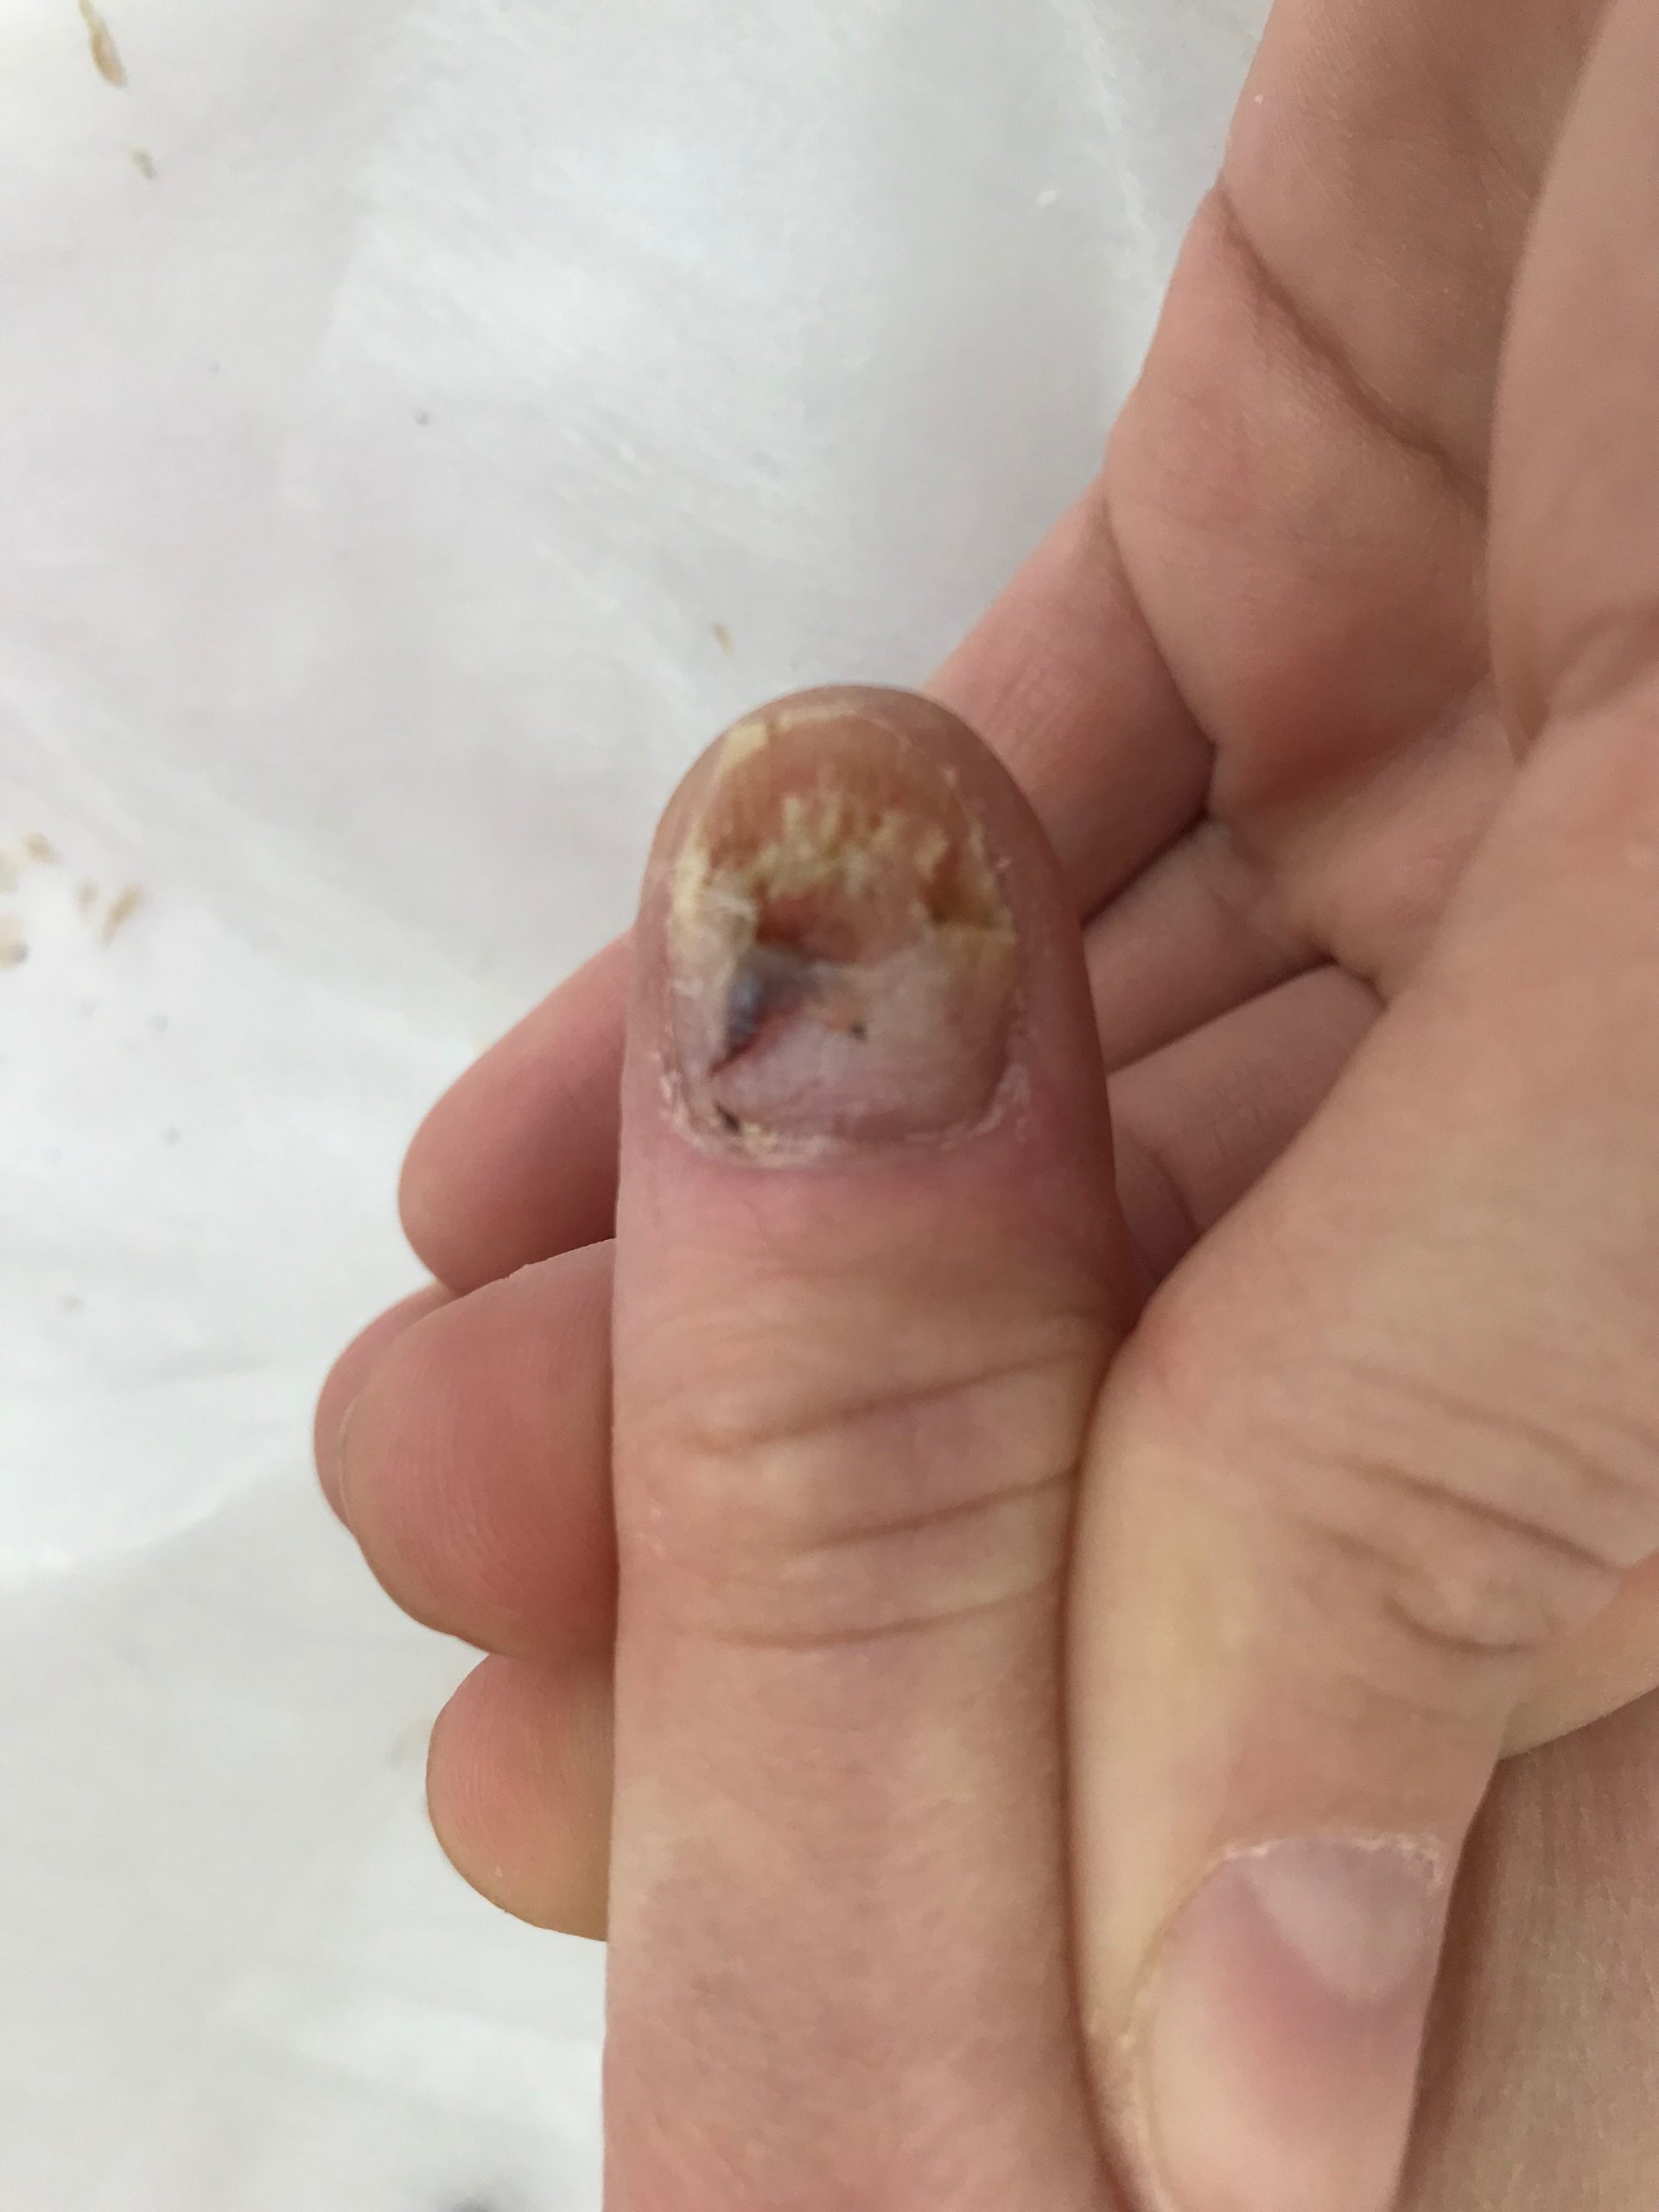 Онихомикоз (грибок ногтей) - причины, лечение, профилактика - Евромед